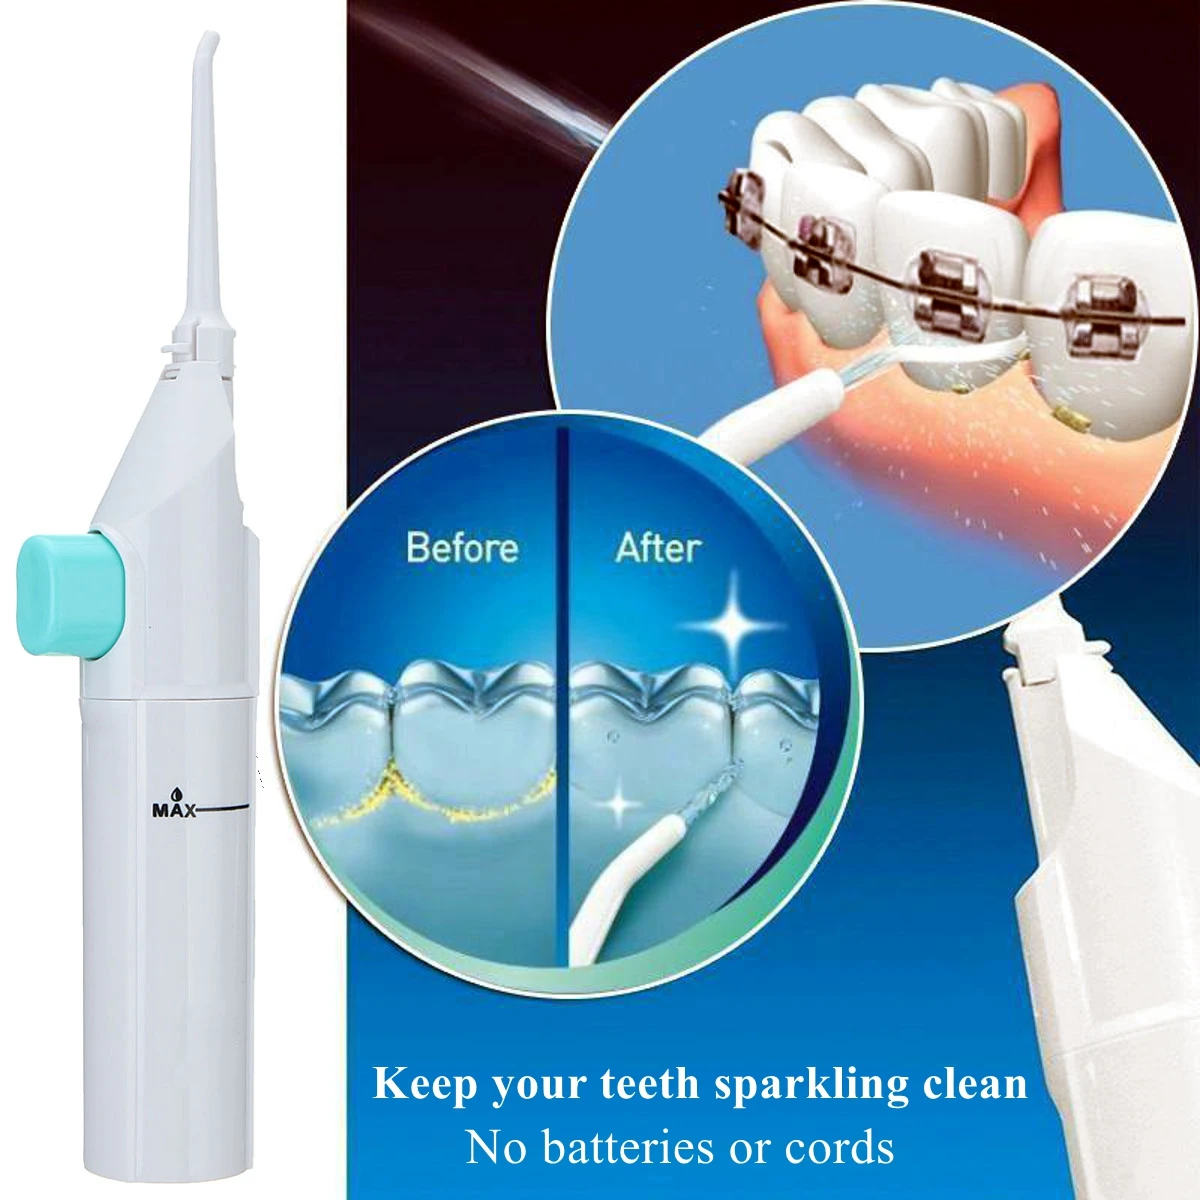 Профессиональный Ирригатор для полости рта стоматологических струи воды гигиены, чистки зубов рупором рот протезы Cleaner отбеливание зубов